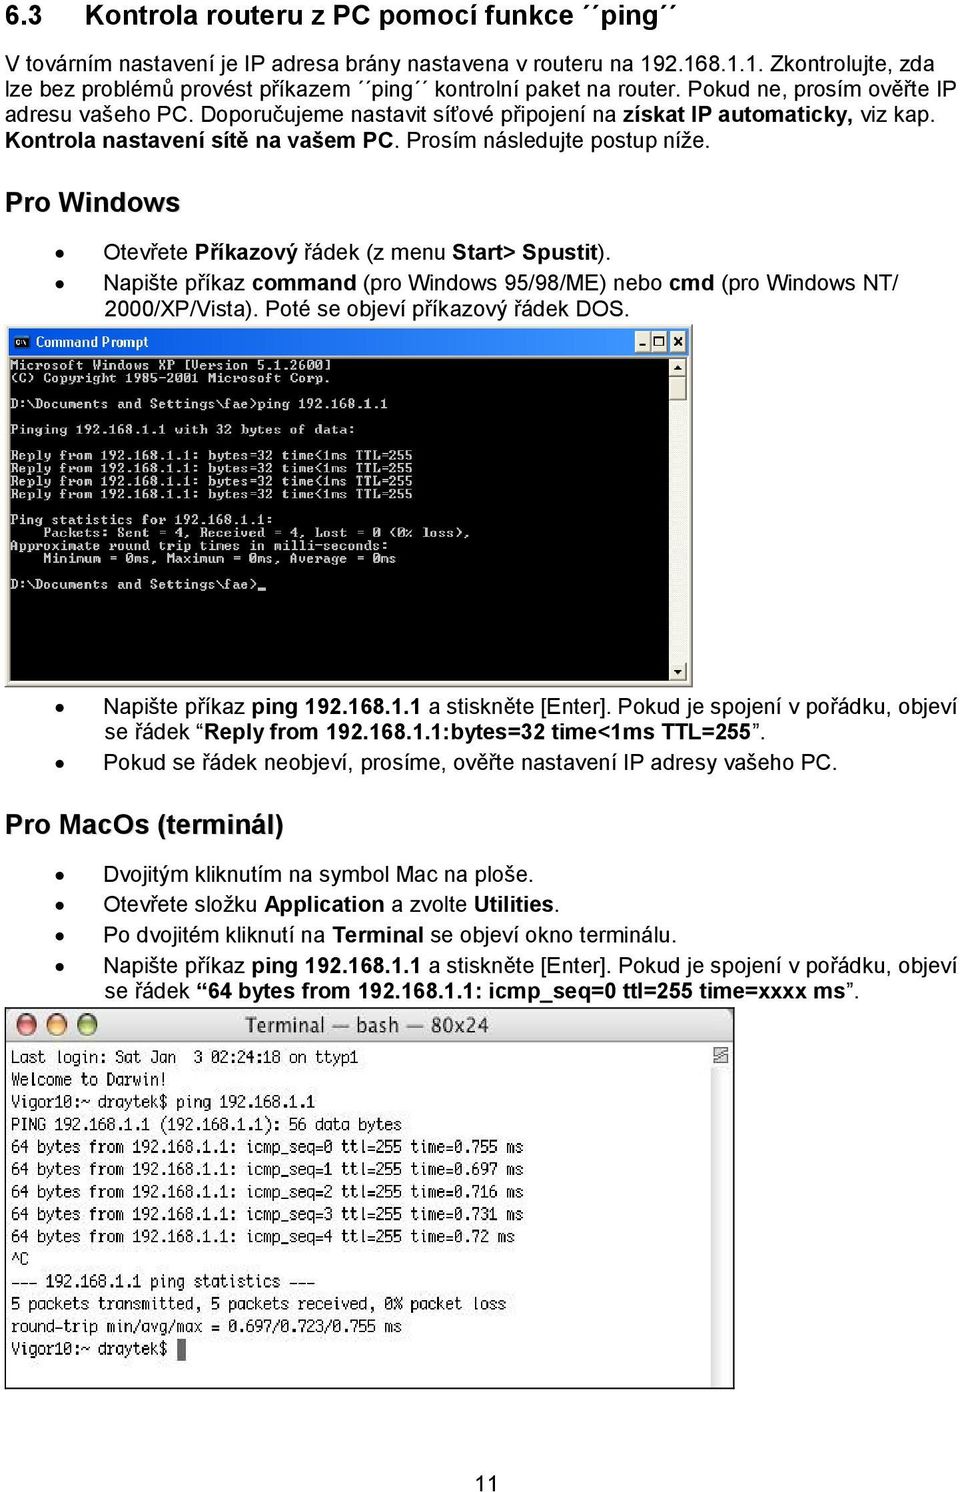 Pro Windows Otevřete Příkazový řádek (z menu Start> Spustit). Napište příkaz command (pro Windows 95/98/ME) nebo cmd (pro Windows NT/ 2000/XP/Vista). Poté se objeví příkazový řádek DOS.